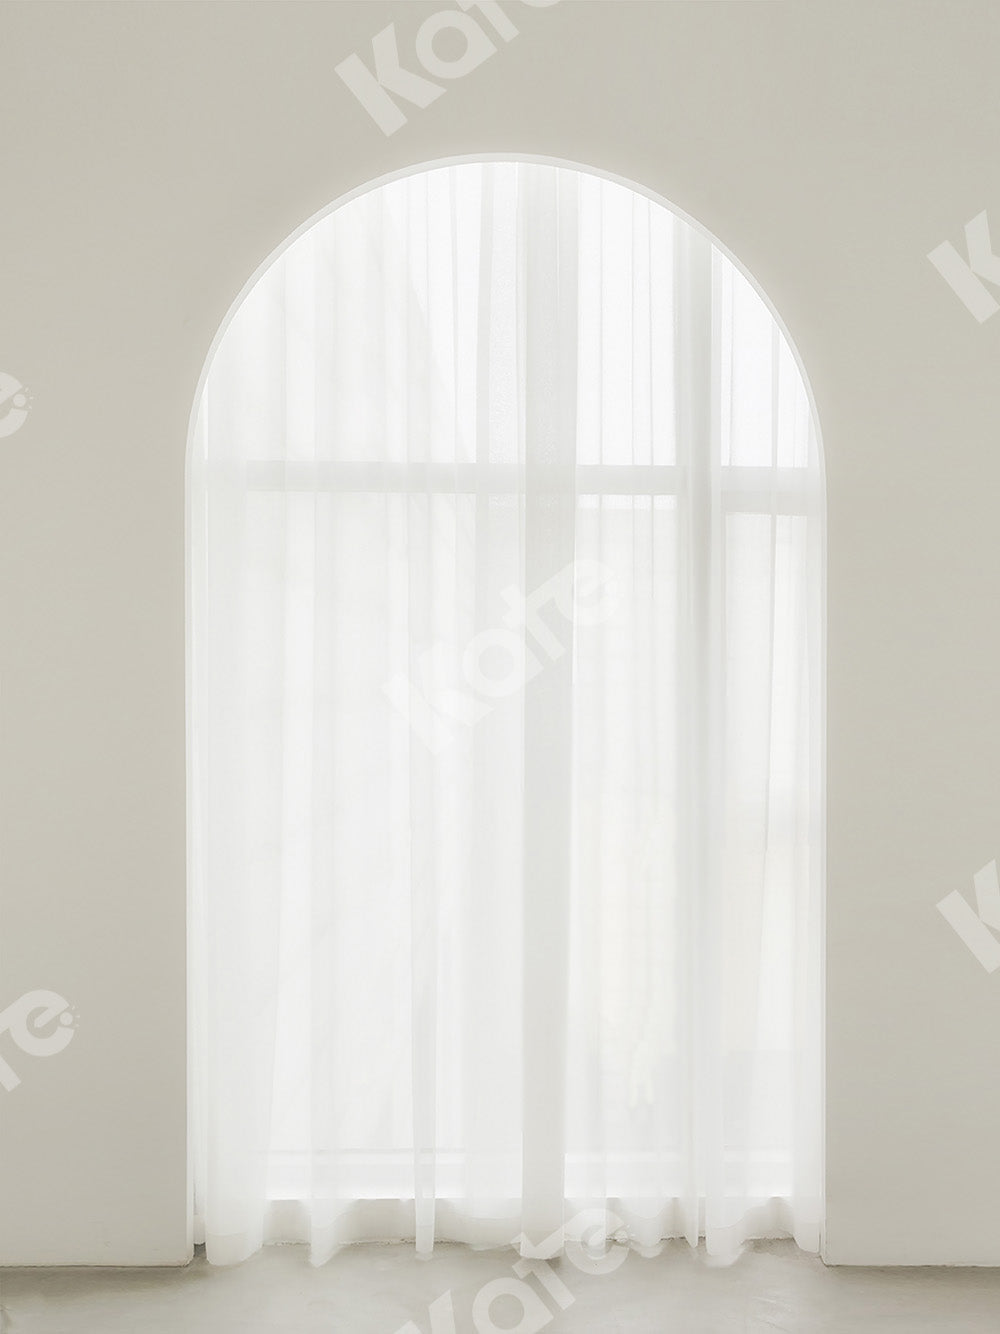 Kate 白いカーテンの窓の布の写真撮影の背景